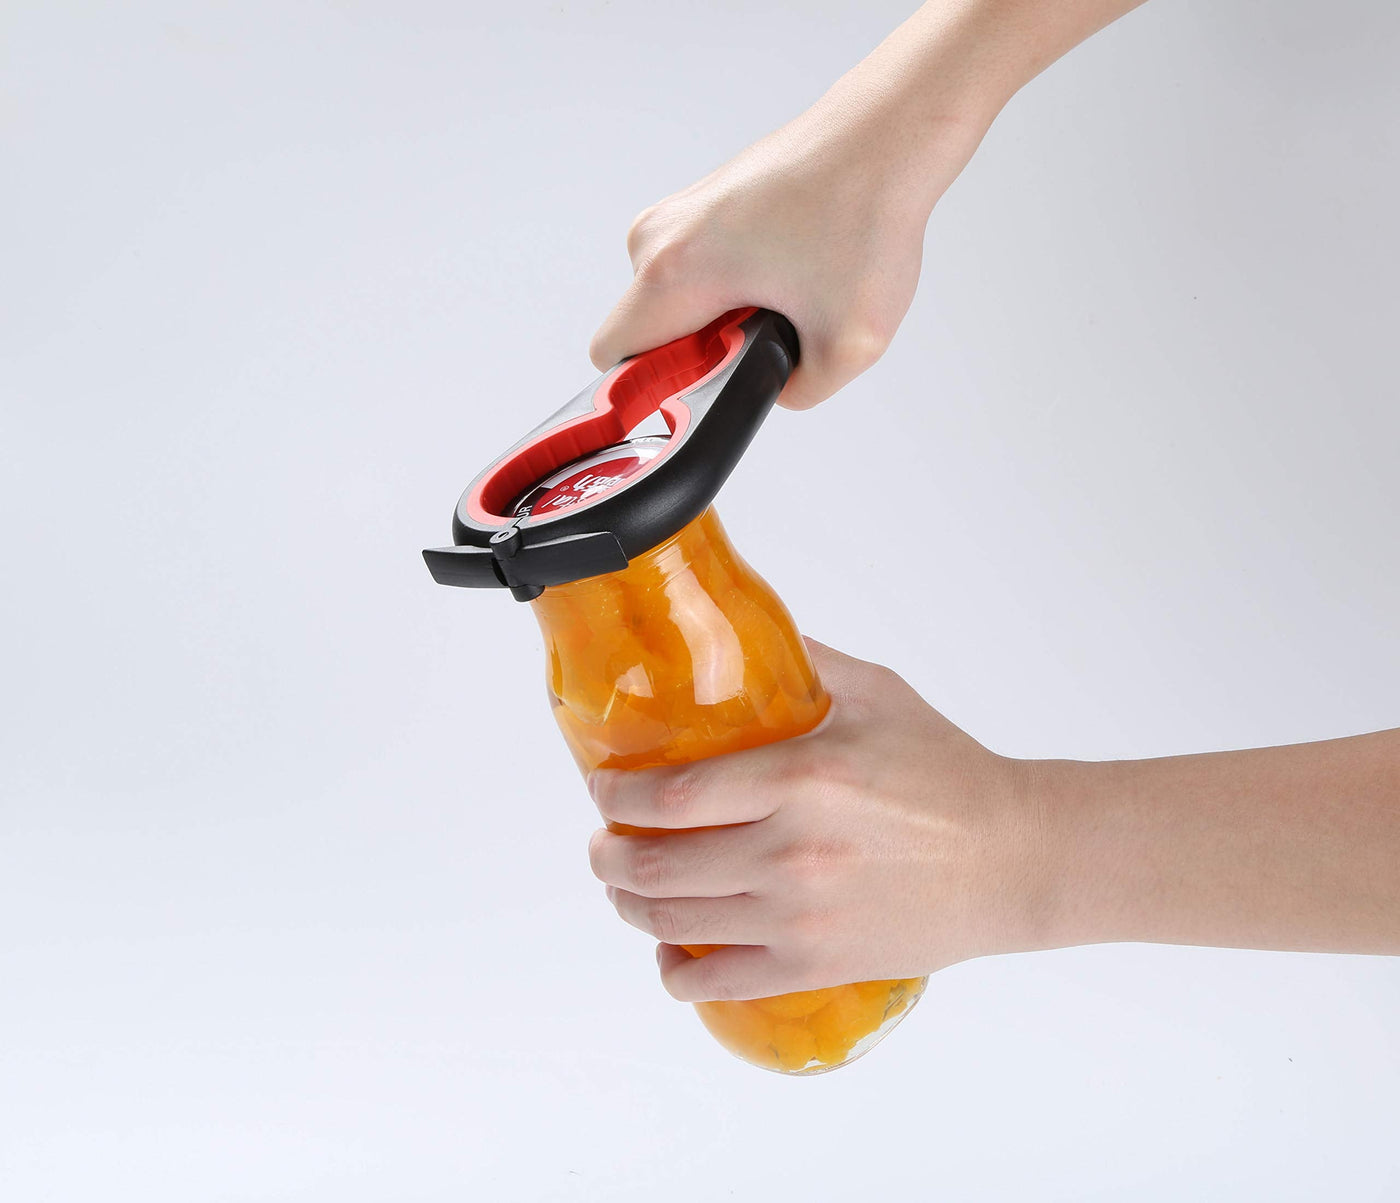 Otstar Jar Opener Bottle Opener and Ring Pull Can Opener for Weak Hands Arthritis Hands, Elderly and Children